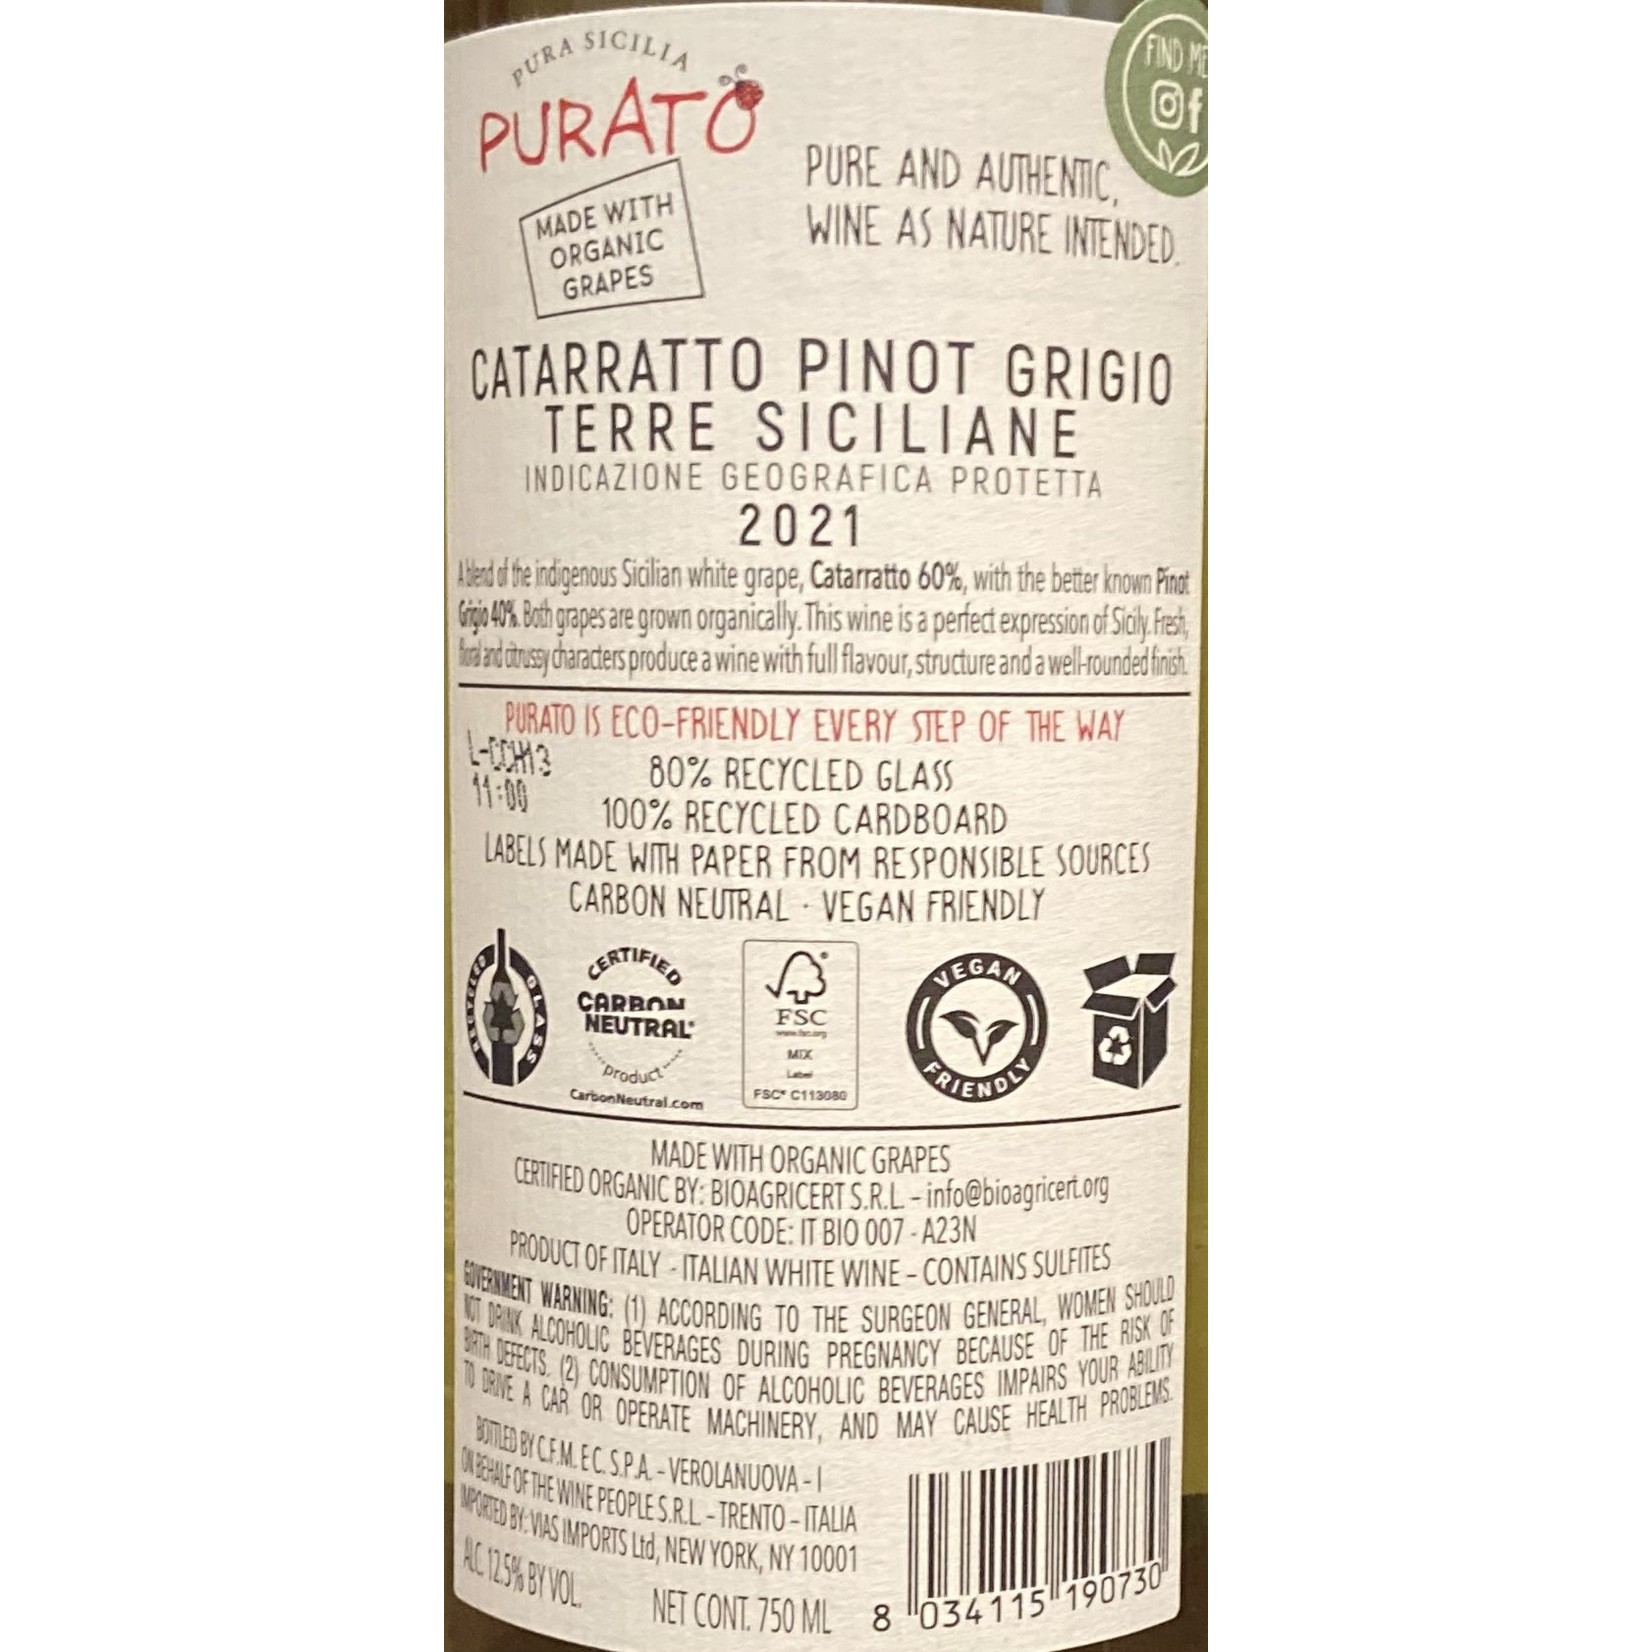 Purato Catarratto/Pinot Grigio, Sicily, Italy 2021